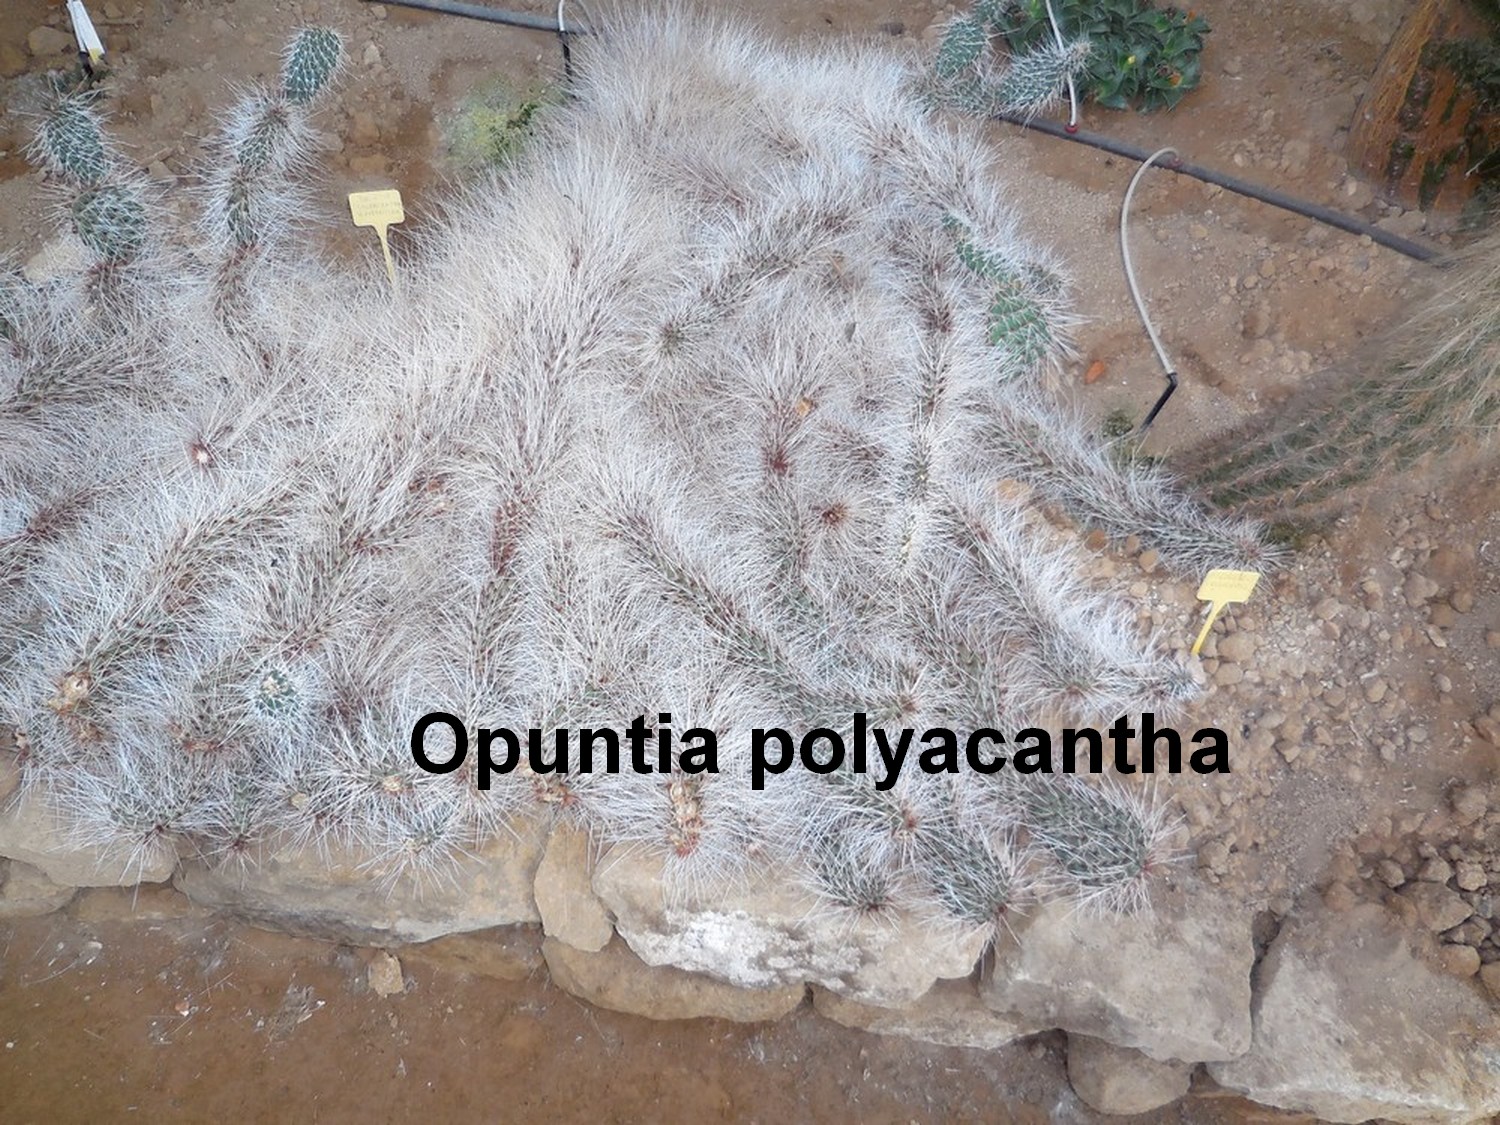 La cactuseraie de Creismas en Guipavas